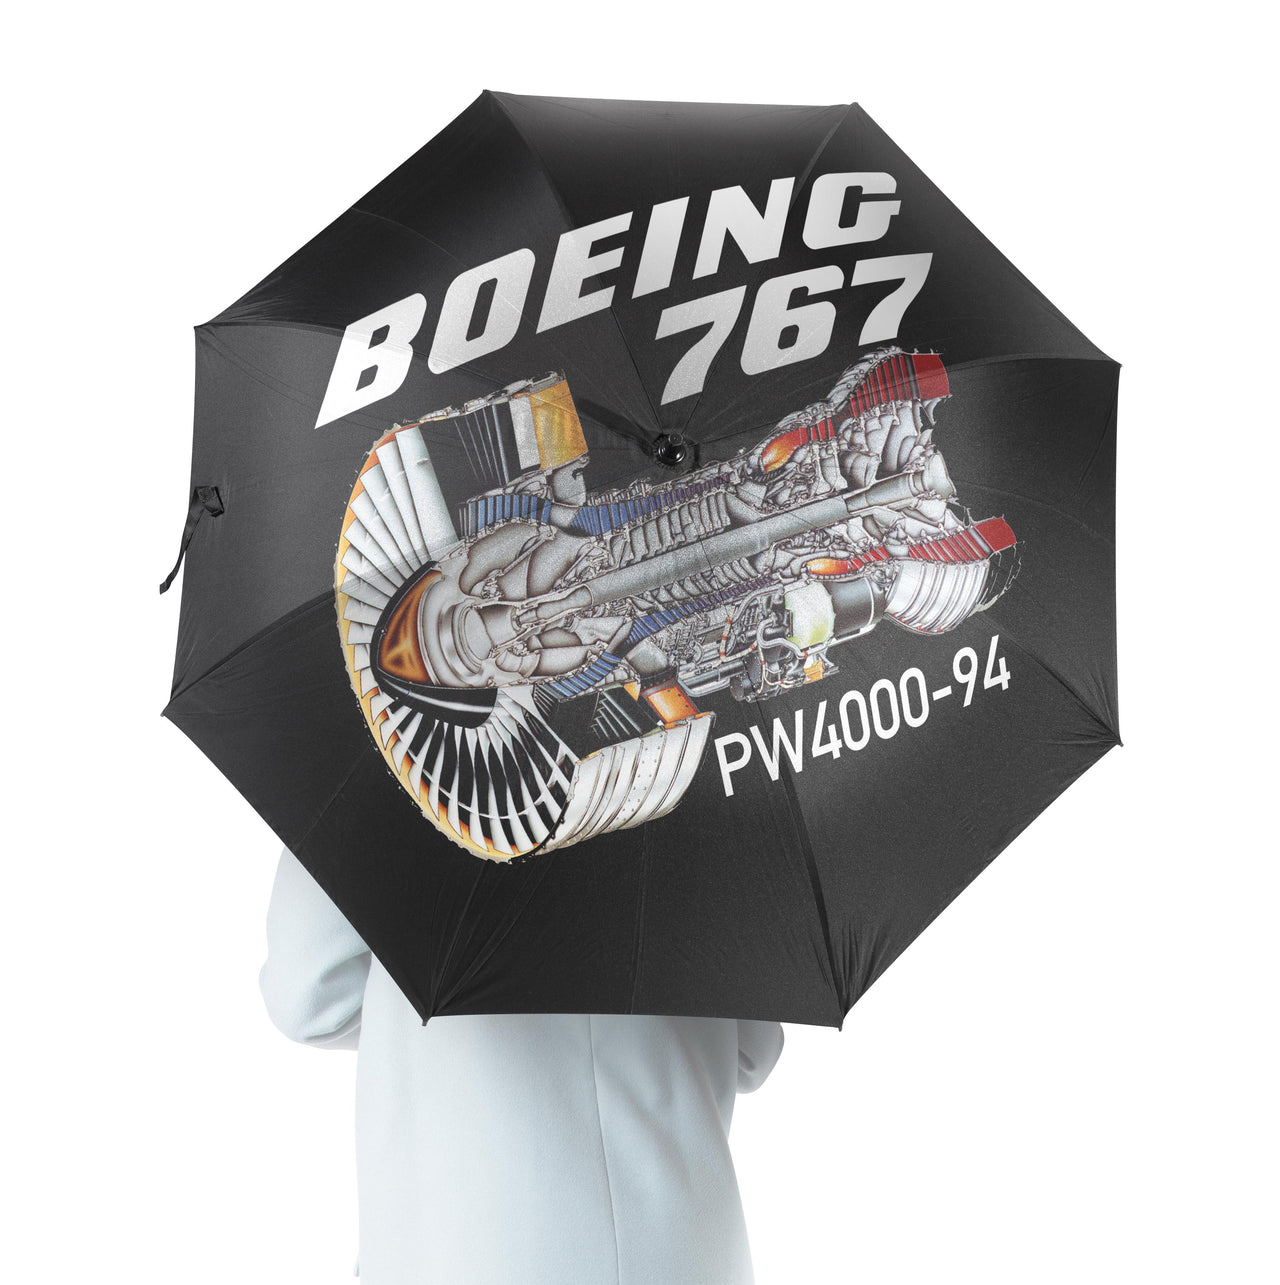 Boeing 767 Engine (PW4000-94) Designed Umbrella